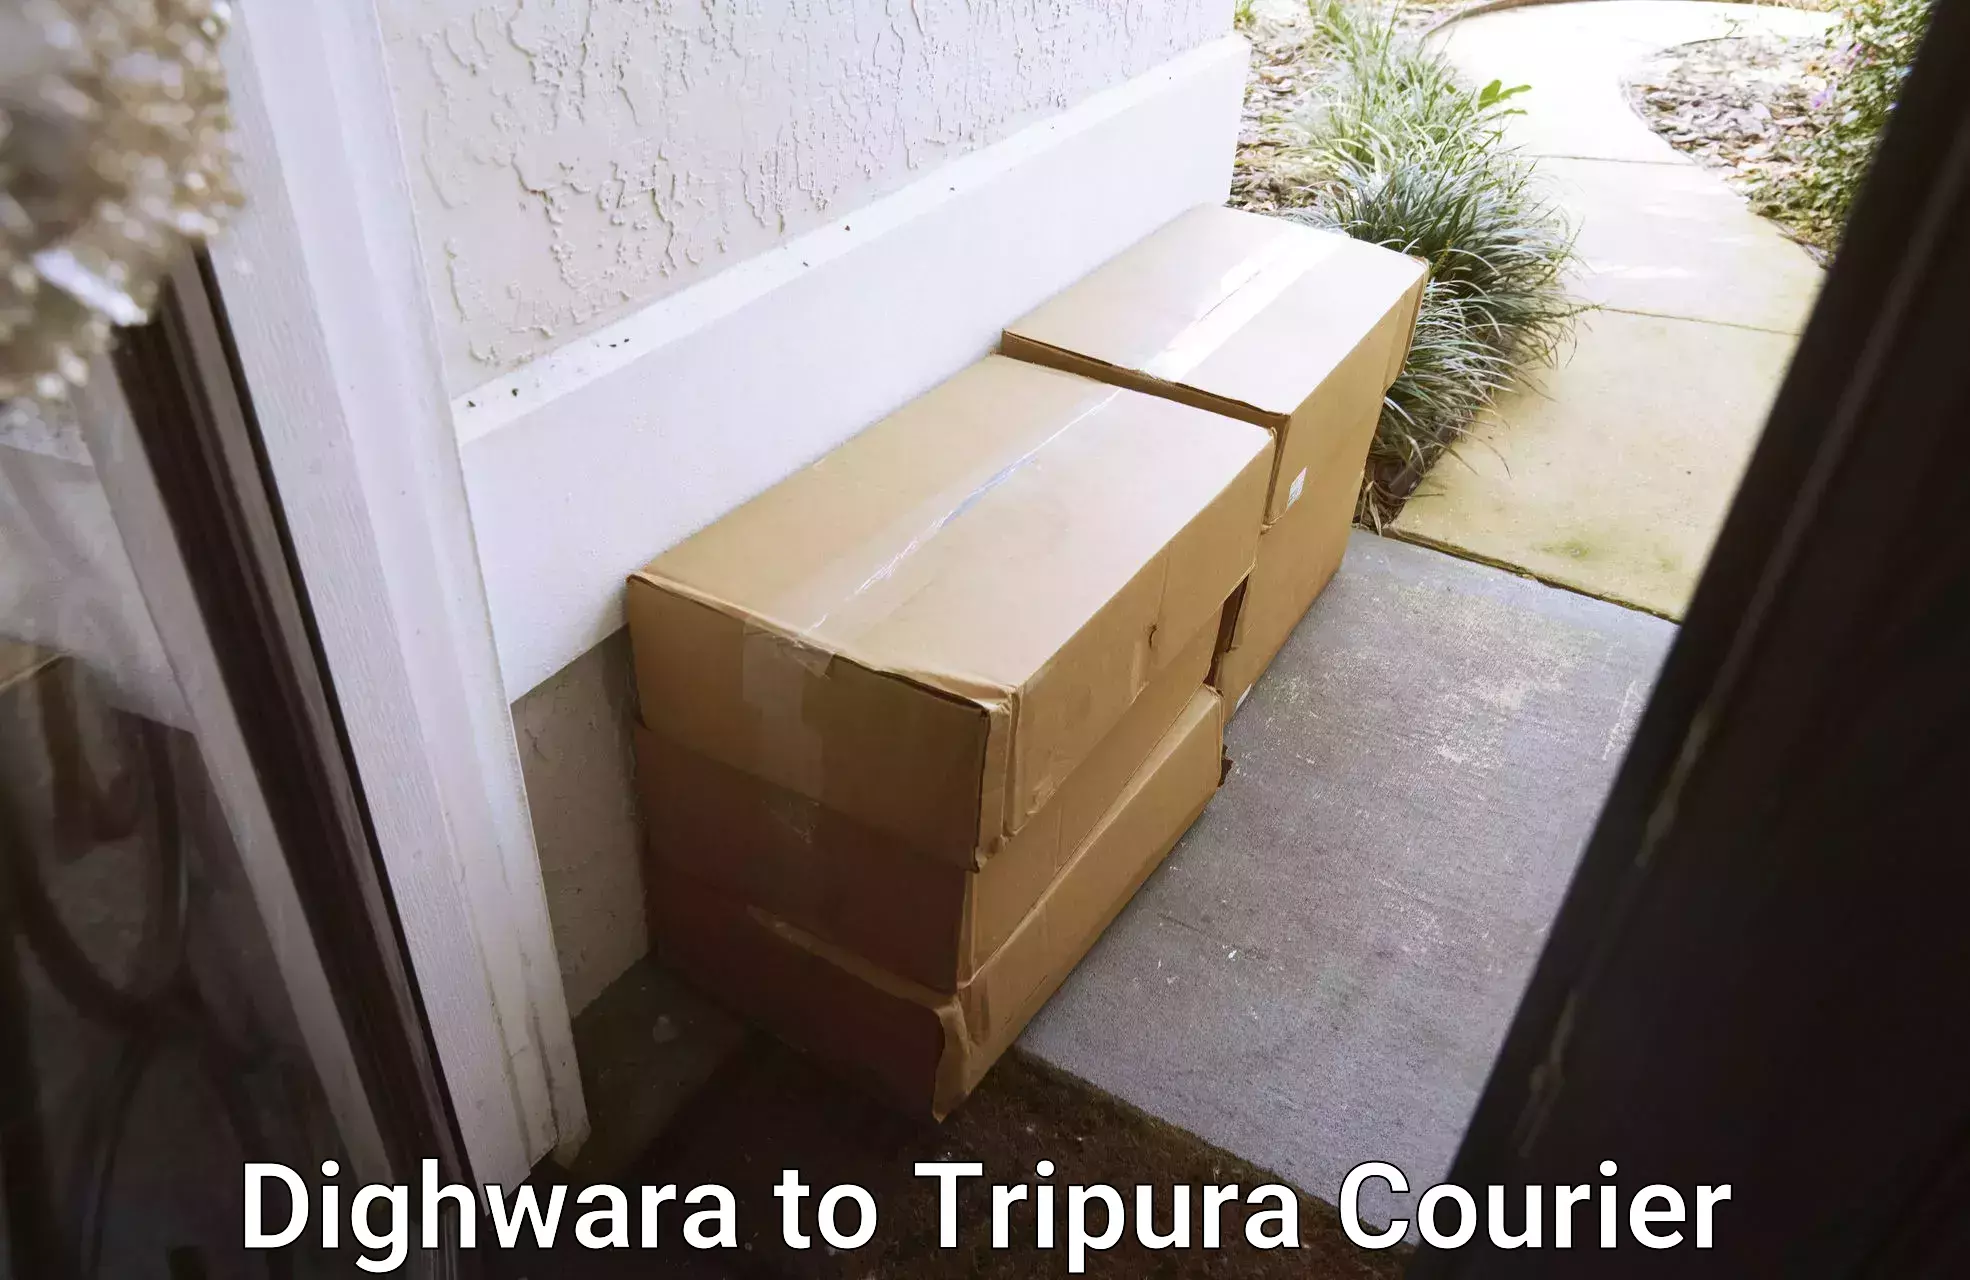 Furniture transport experts Dighwara to Tripura